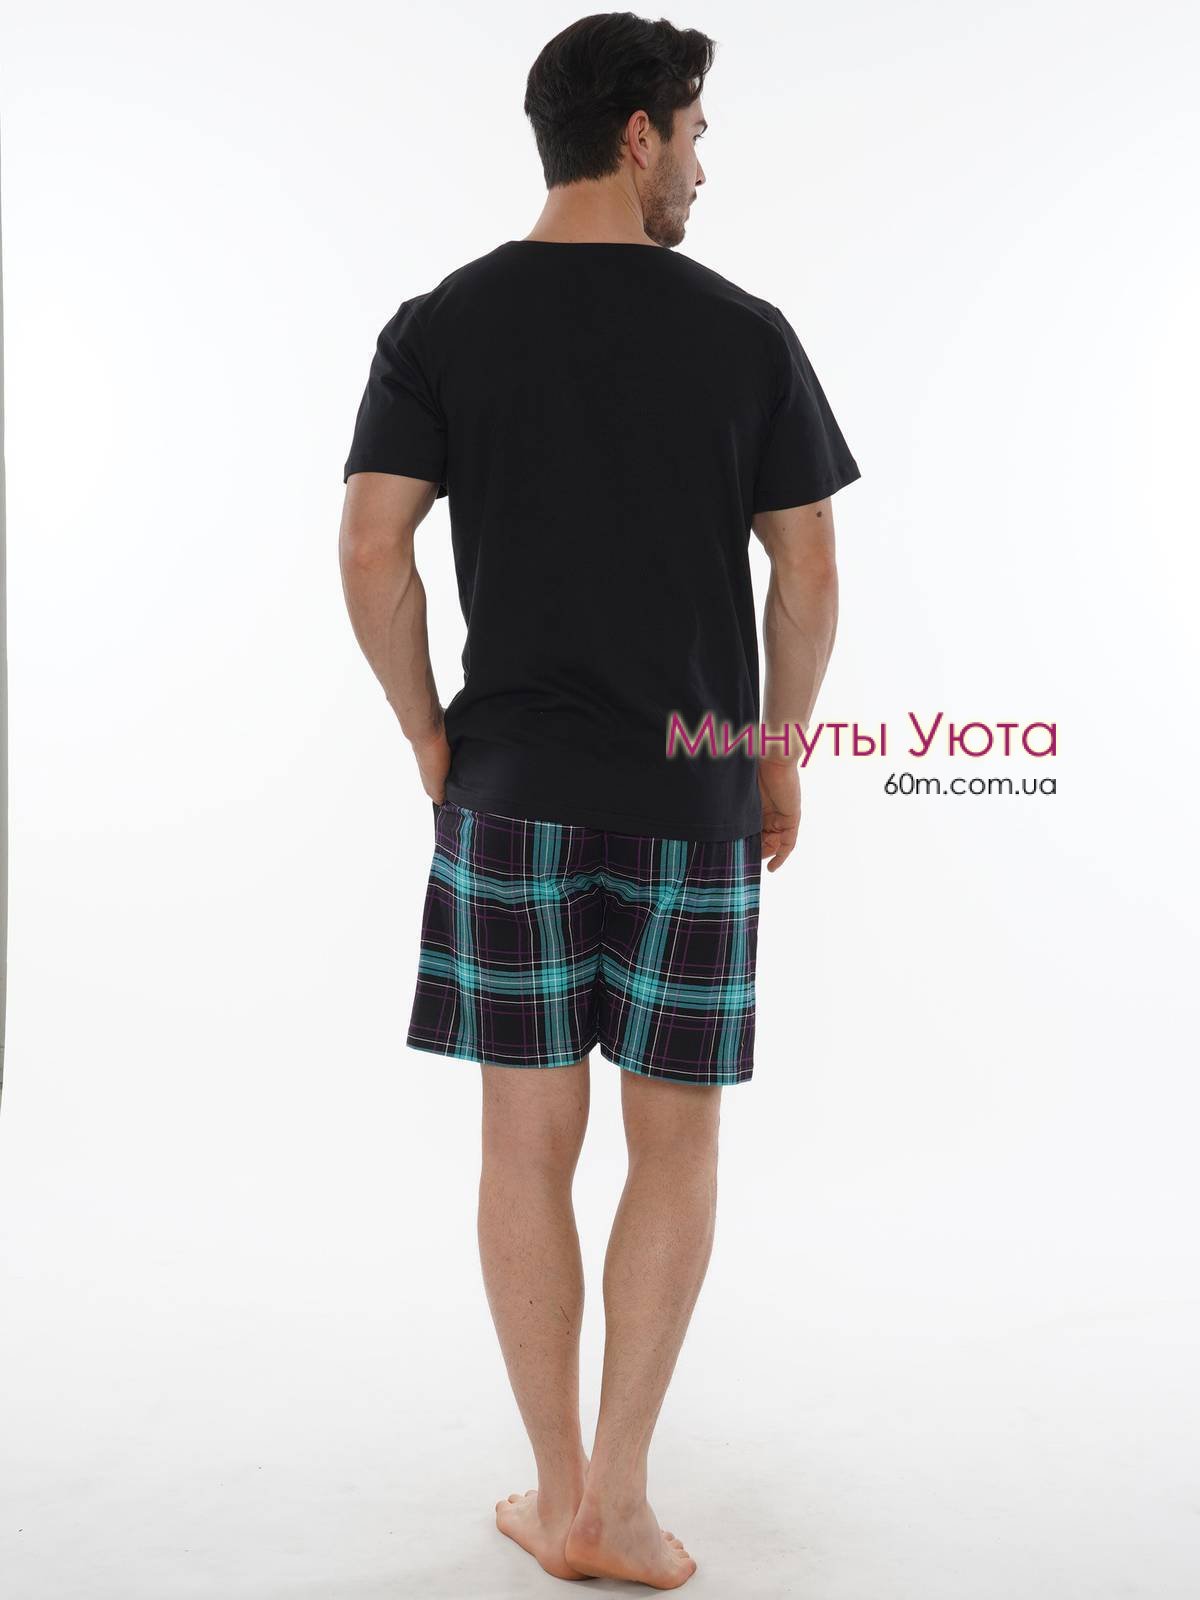 Летняя мужская пижама черного цвета с принтом на футболке и клетчатыми шортами Gazzaz